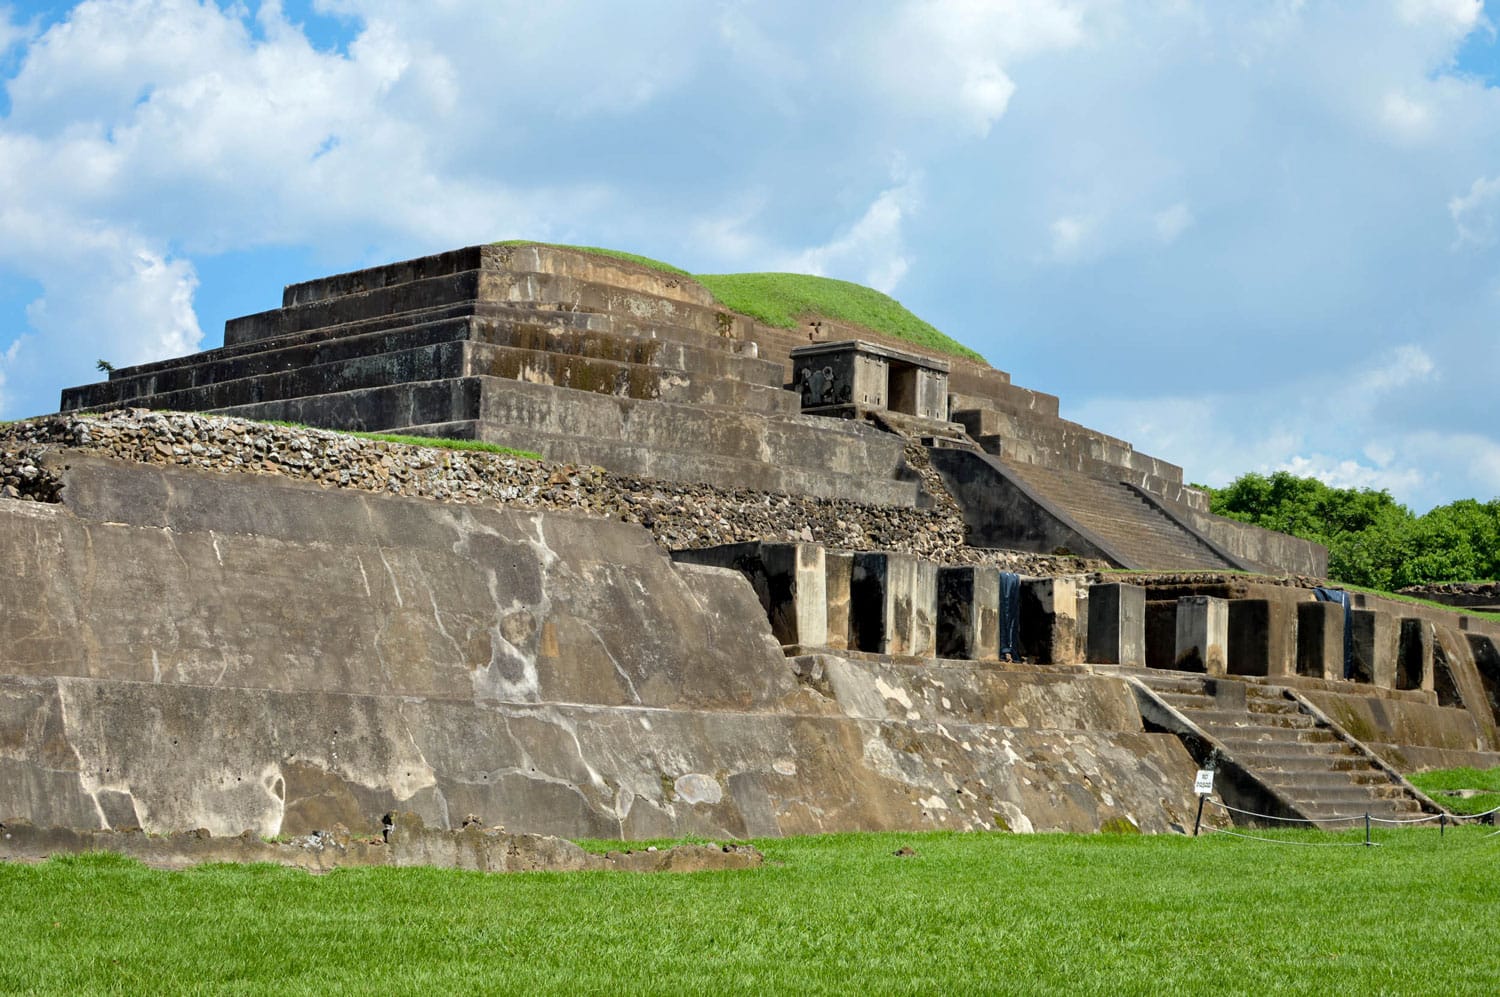 Ταζουμάλ αρχαιολογικός χώρος του πολιτισμού των Μάγια στο Ελ Σαλβαδόρ